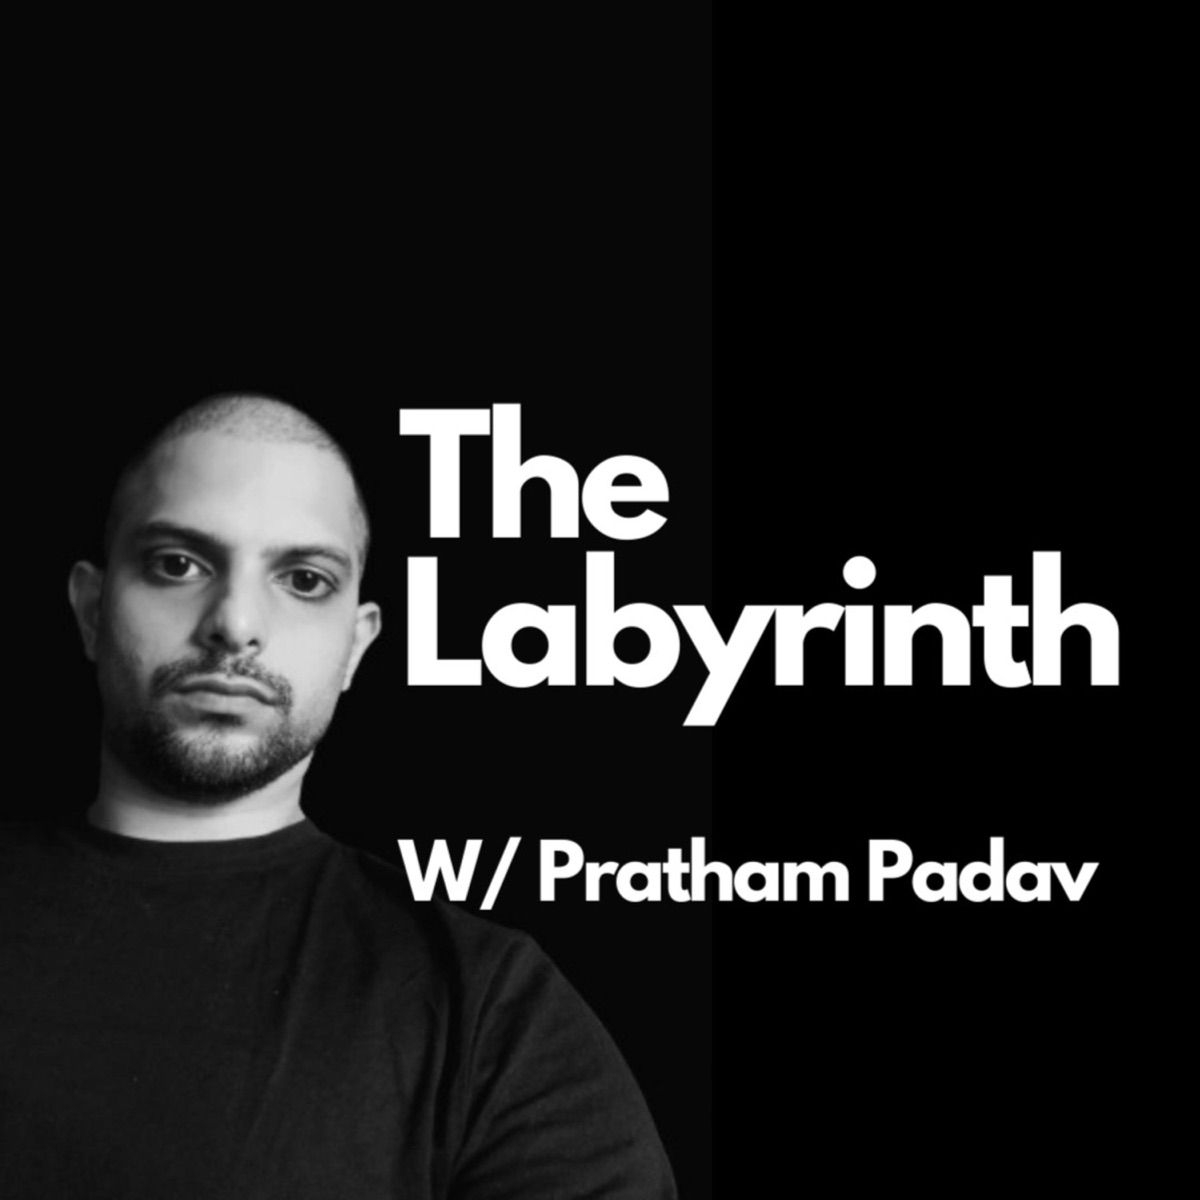 The Labyrinth â€“ Podcast â€“ Podtail